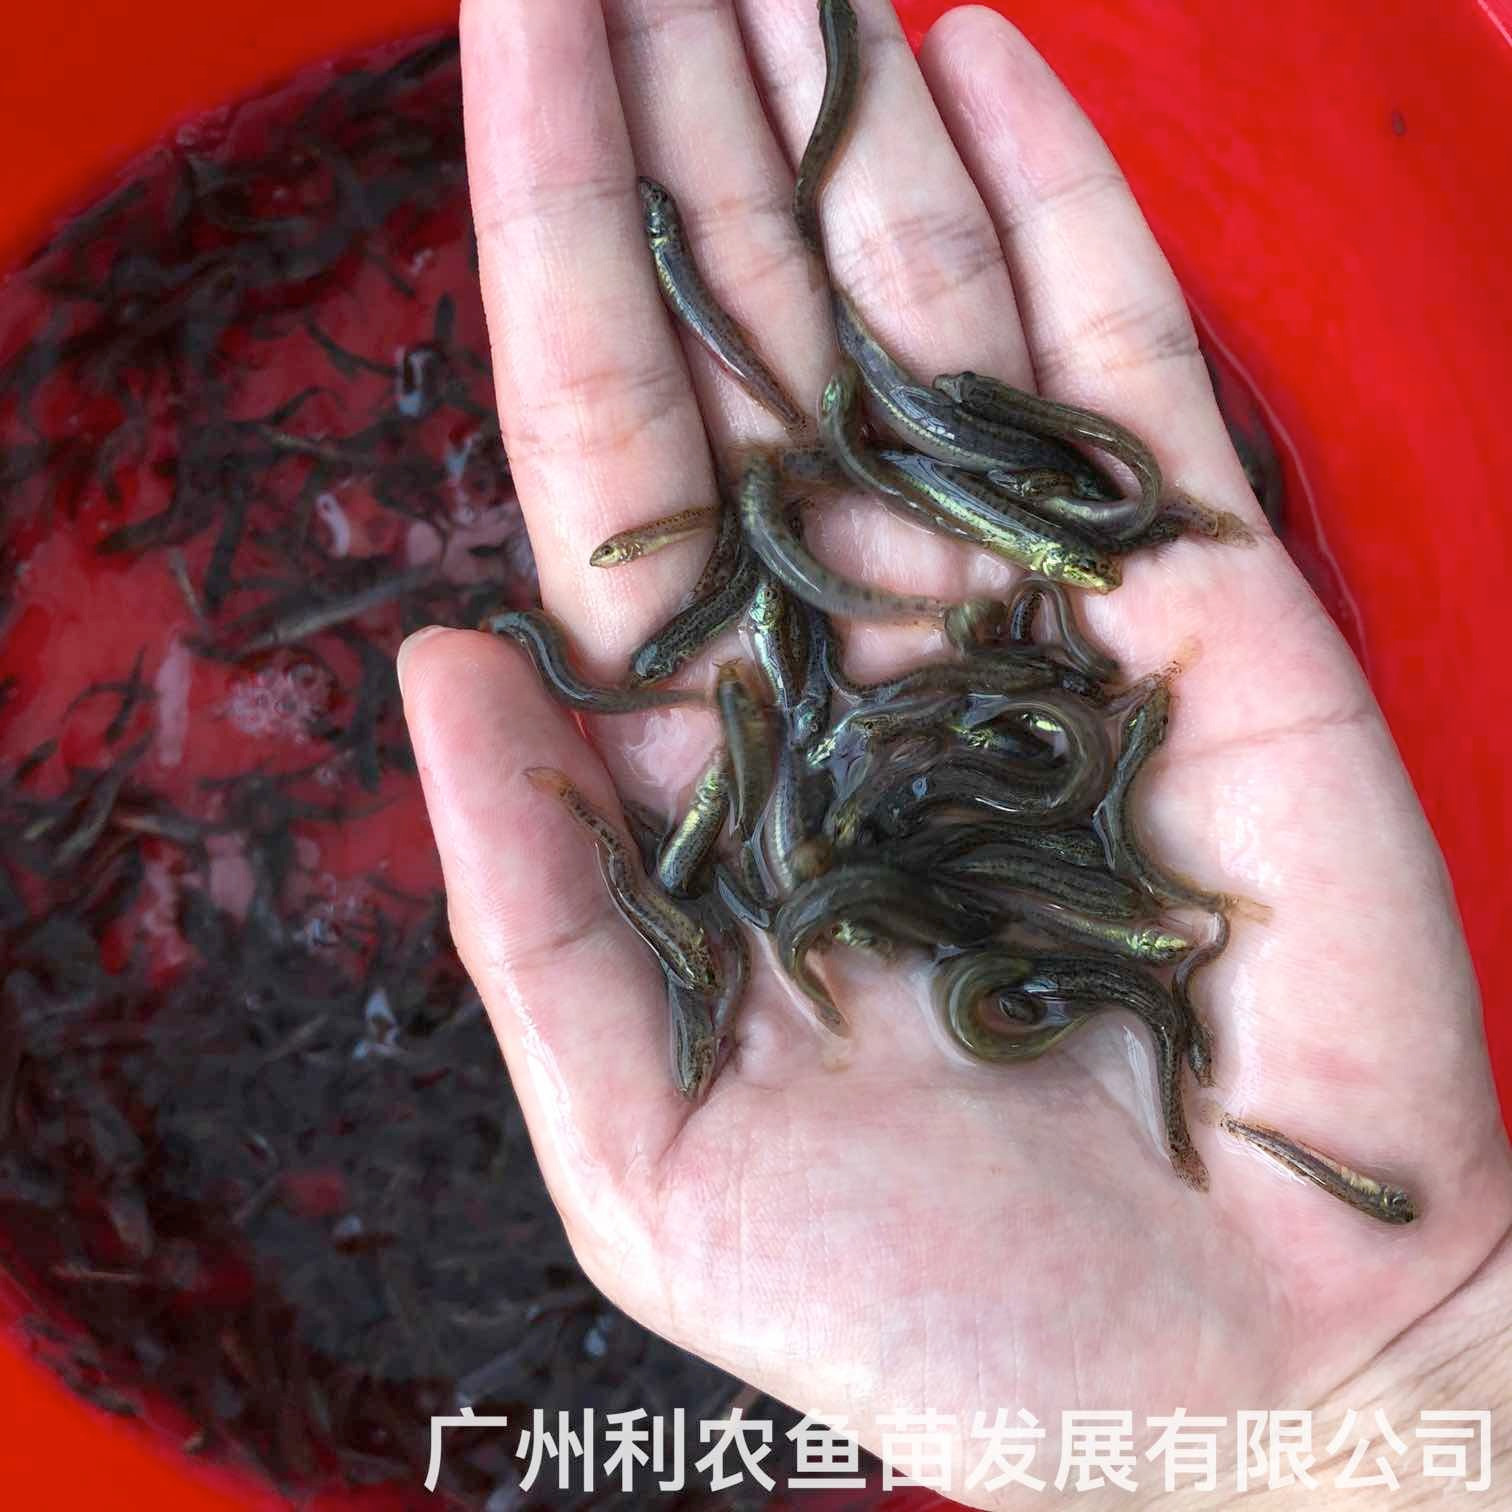 广东茂名台湾泥鳅苗出售出售价格广东湛江泥鳅鱼苗批发养殖基地